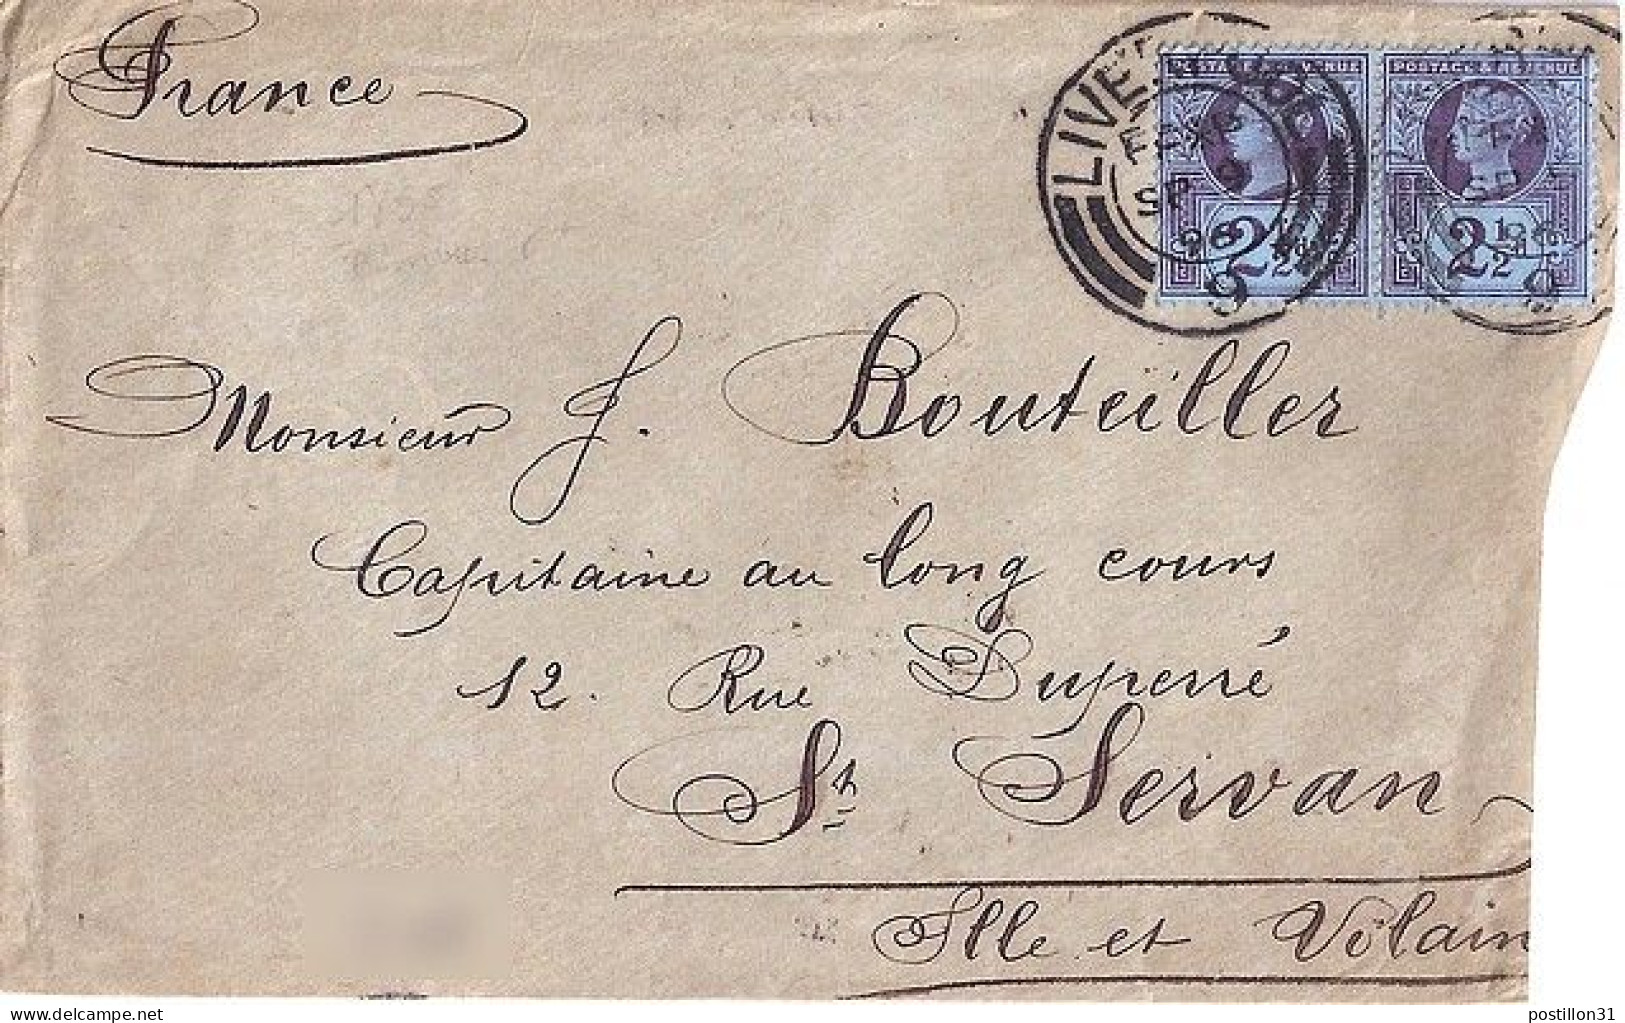 GRANDE BRETAGNE N° 95x2 S/L. DE LIVERPOOL/9.9.96 POUR LA FRANCE - Lettres & Documents